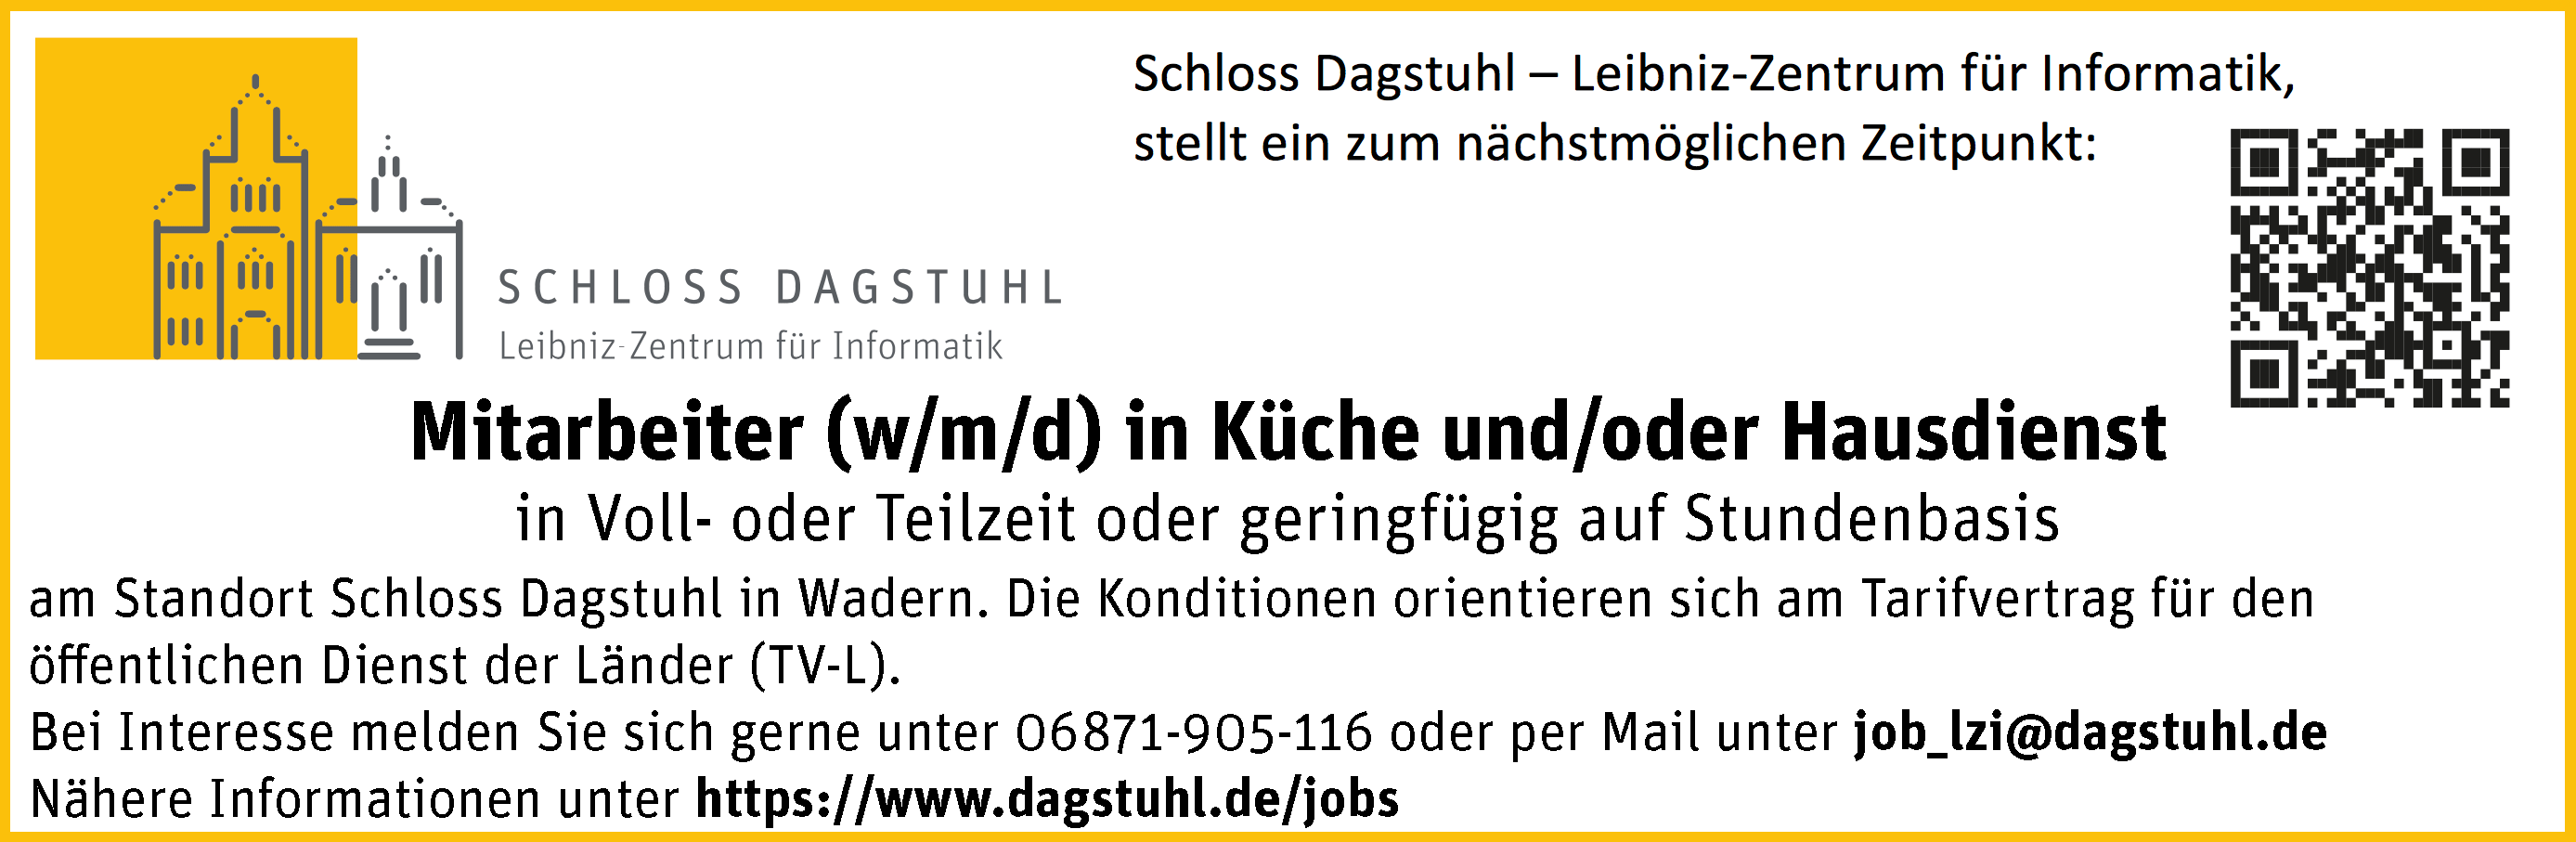 Article Image: Schloss Dagstuhl sucht Mitarbeiter (m/w/d) in Küche und/oder Hausdienst in Wadern